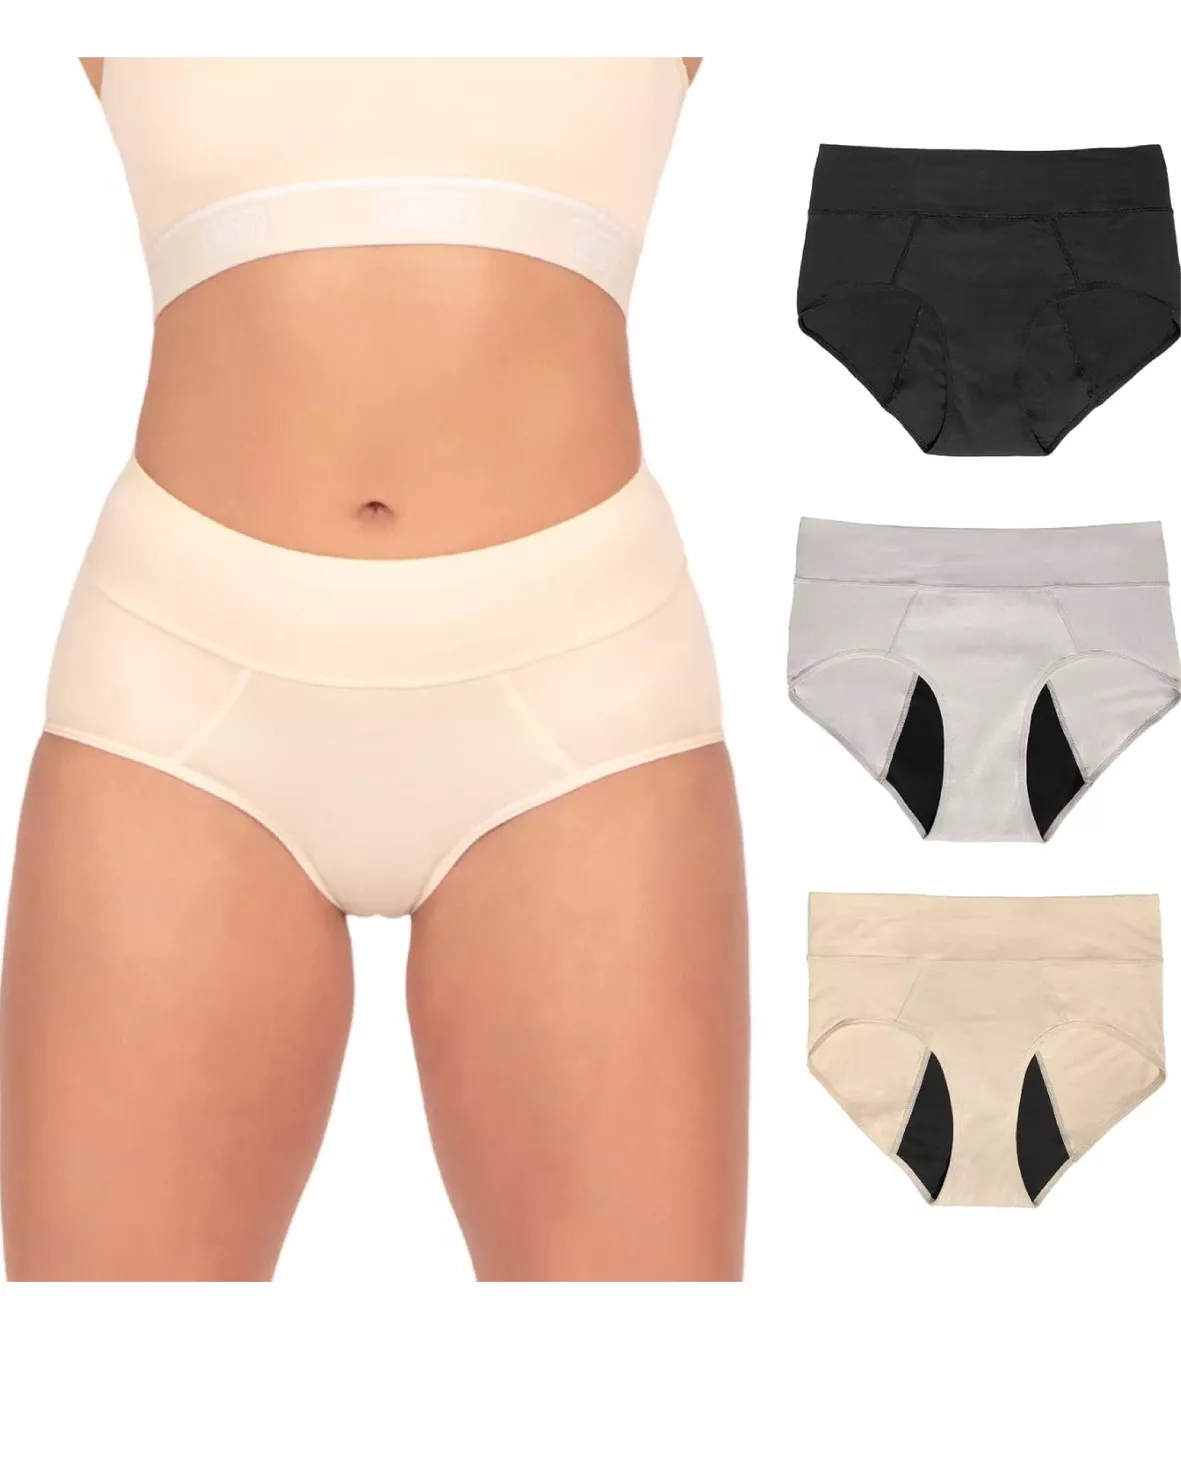 Bambody Period Underwear